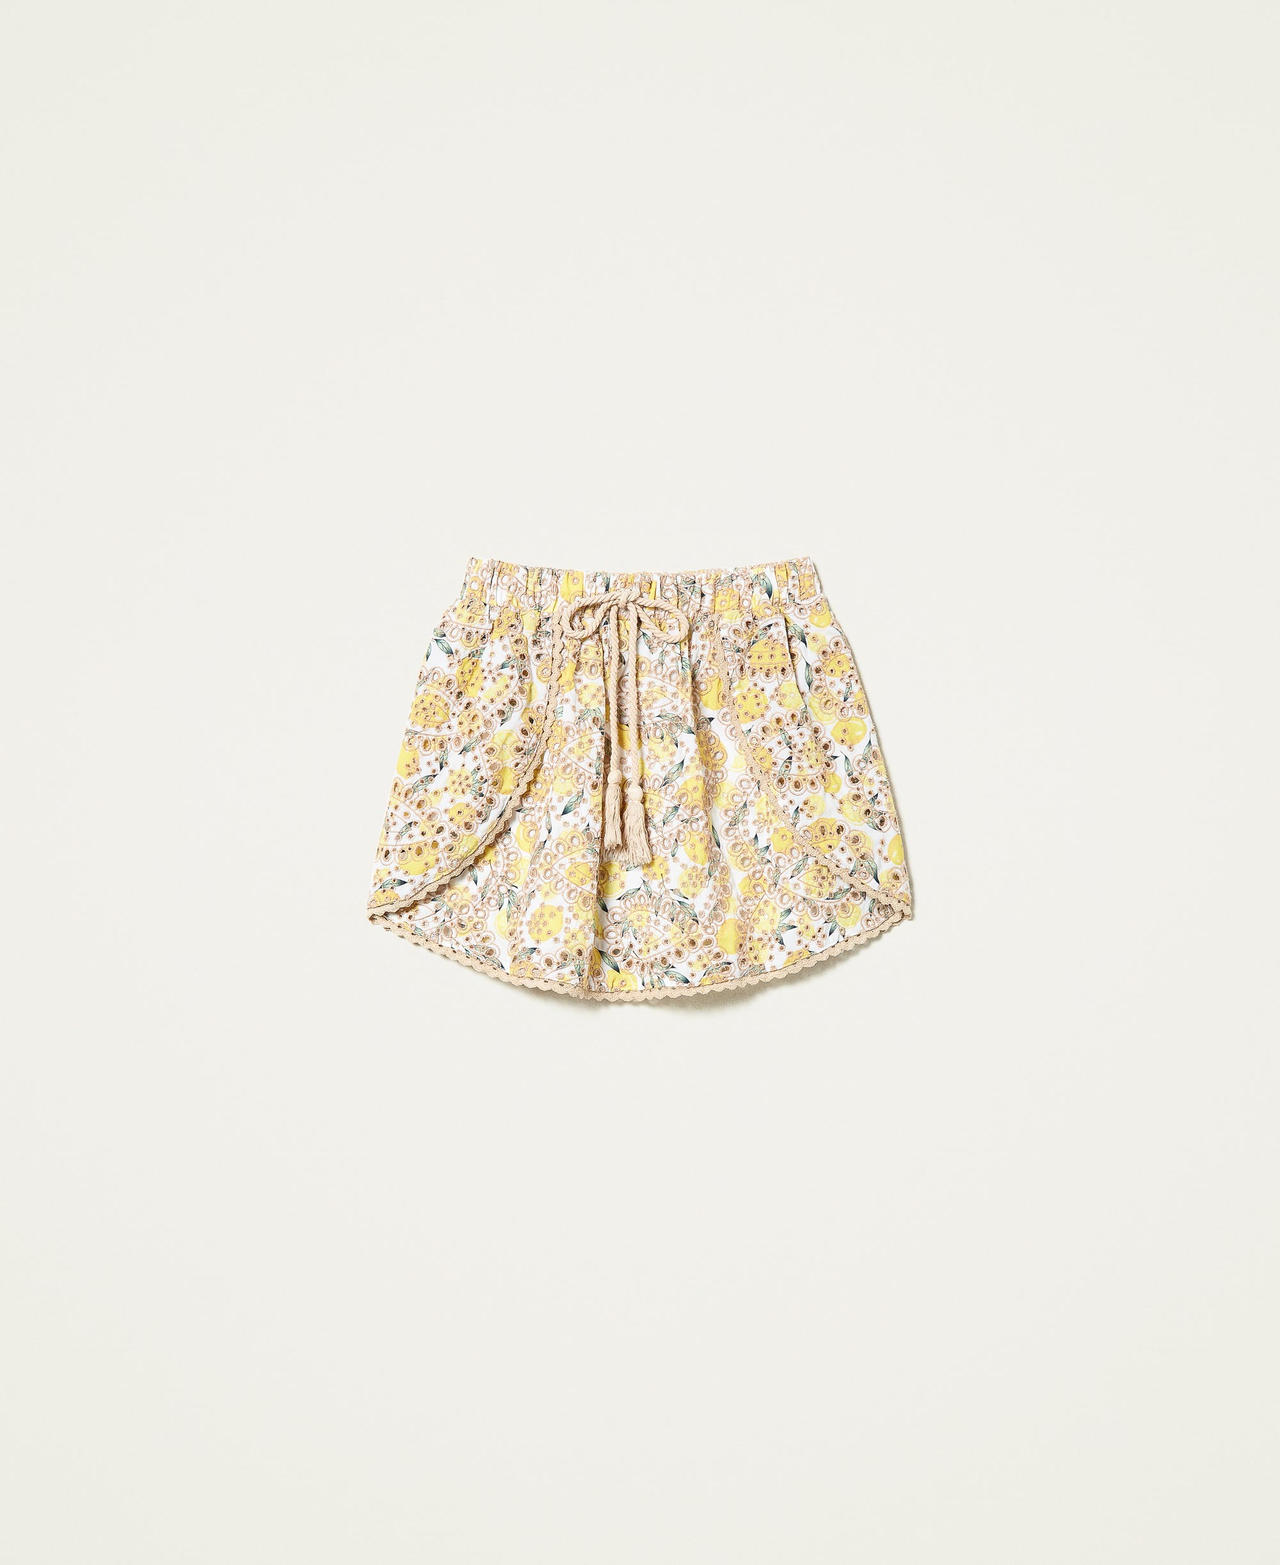 Minifalda estampada con bordado inglés Estampado Bordado Inglés Limones Mujer 221LM2NBB-0S